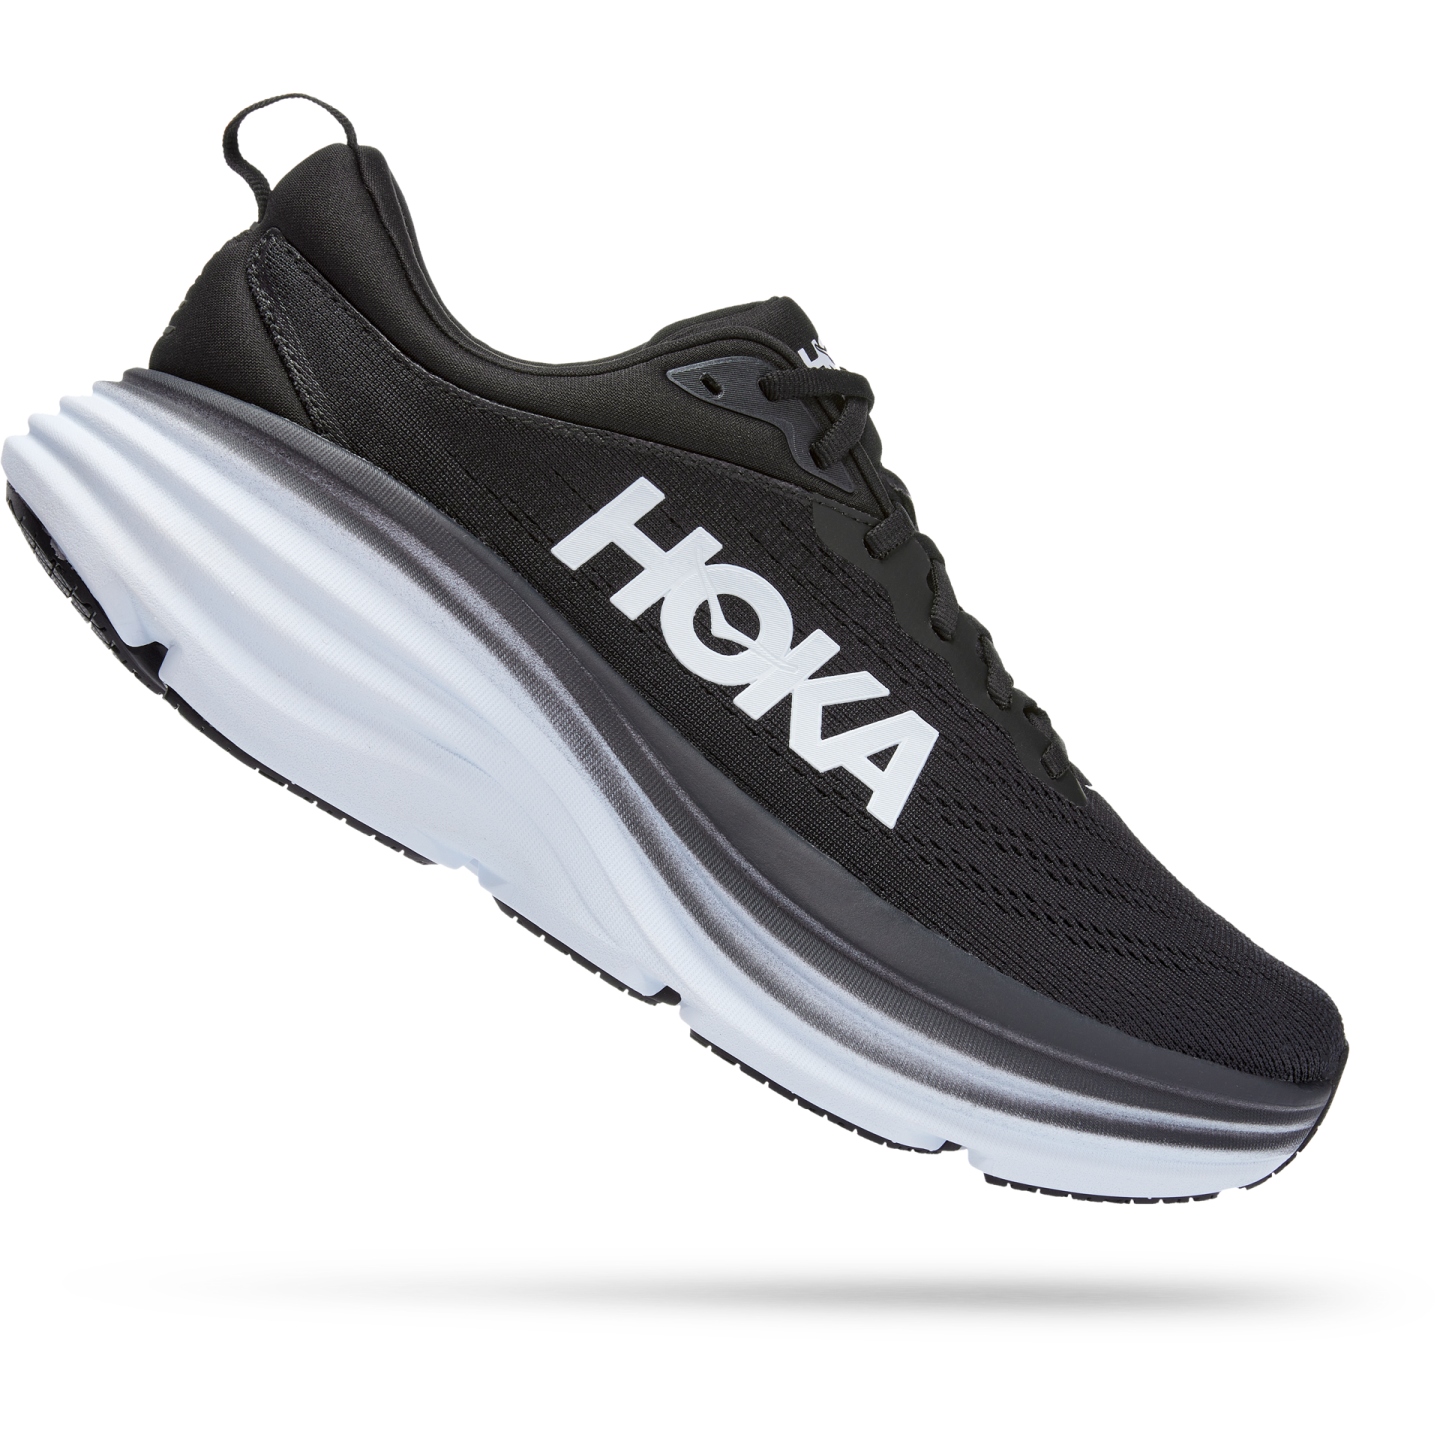 Hoka Zapatillas Running Mujer - Bondi 8 Wide - negro / blanco